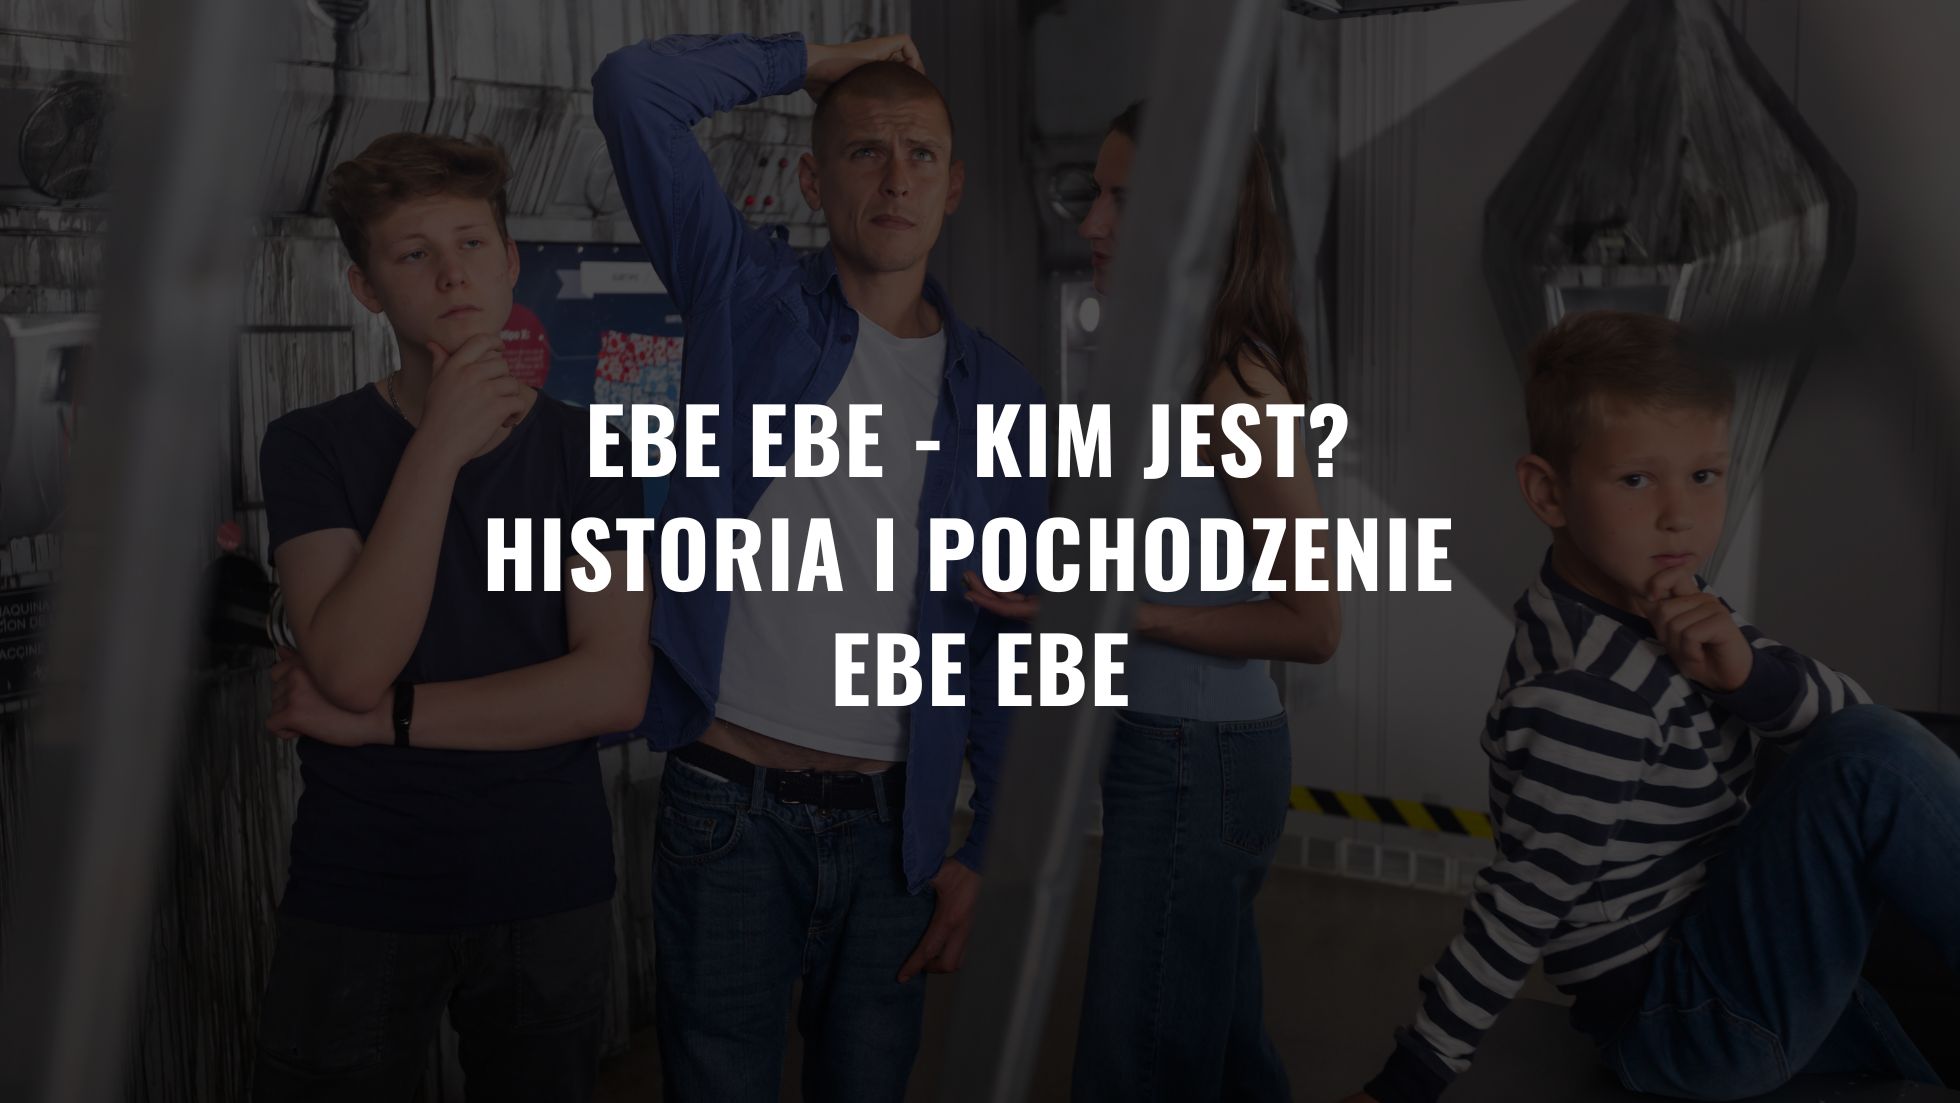 Ebe ebe - kim jest Historia i pochodzenie ebe ebe